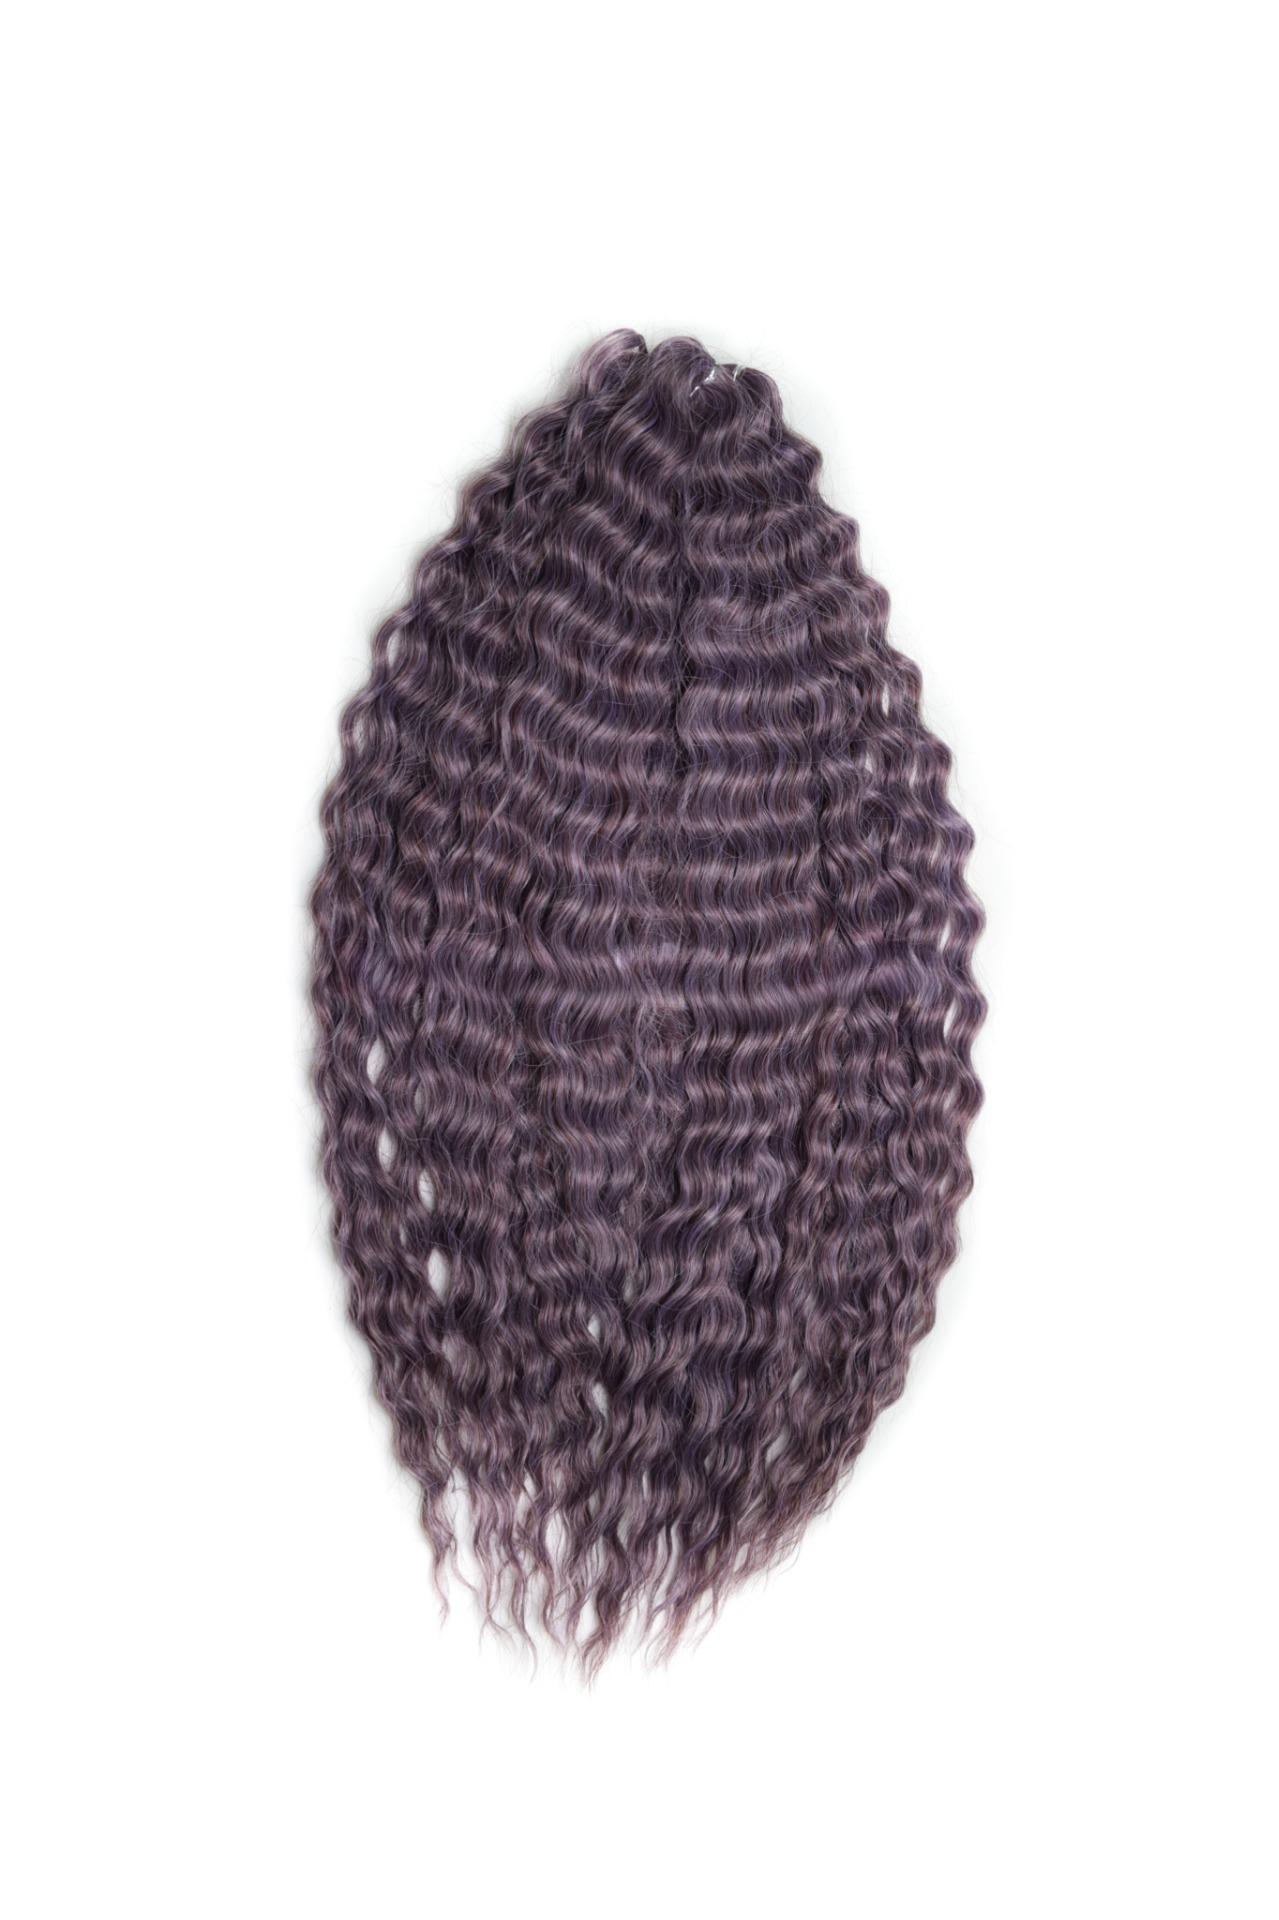 Афрокудри для плетения волос Ariel Ариэль цвет PURPLE GREY длина 60см вес 300г афрокудри для плетения волос ariel ариэль blackberry длина 70см вес 300г